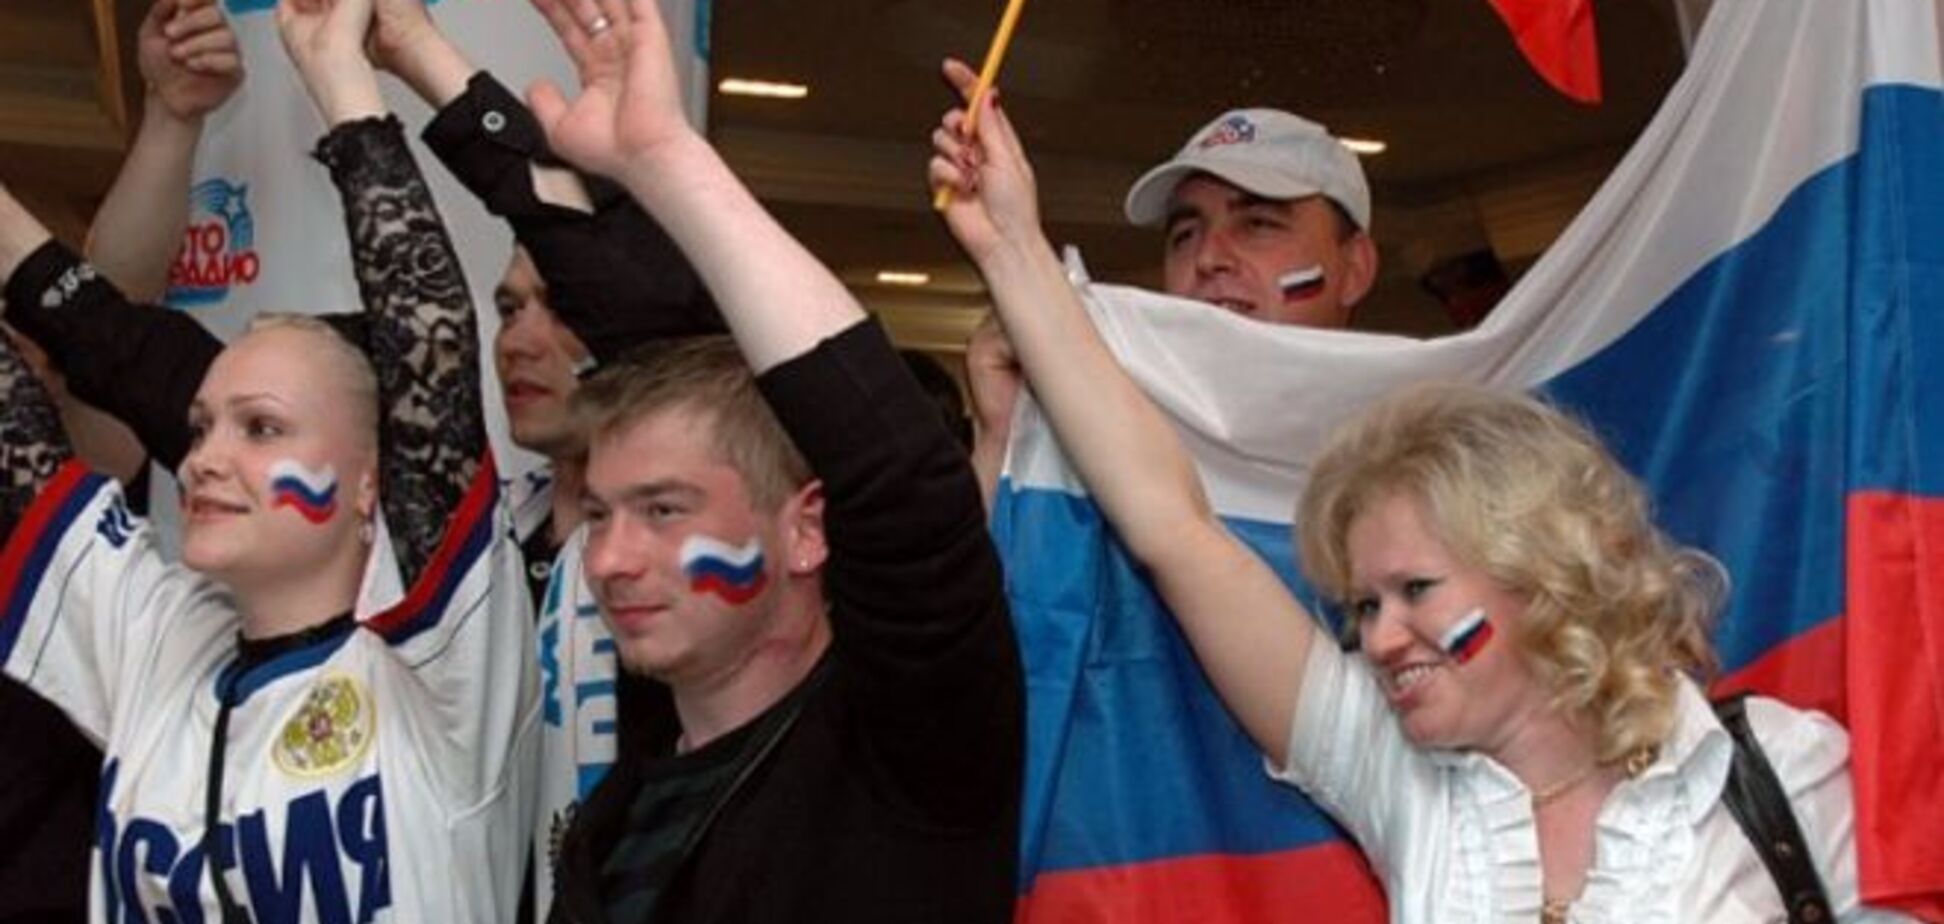 Рай земной: россияне до сих пор считают свою страну мировым лидером - опрос